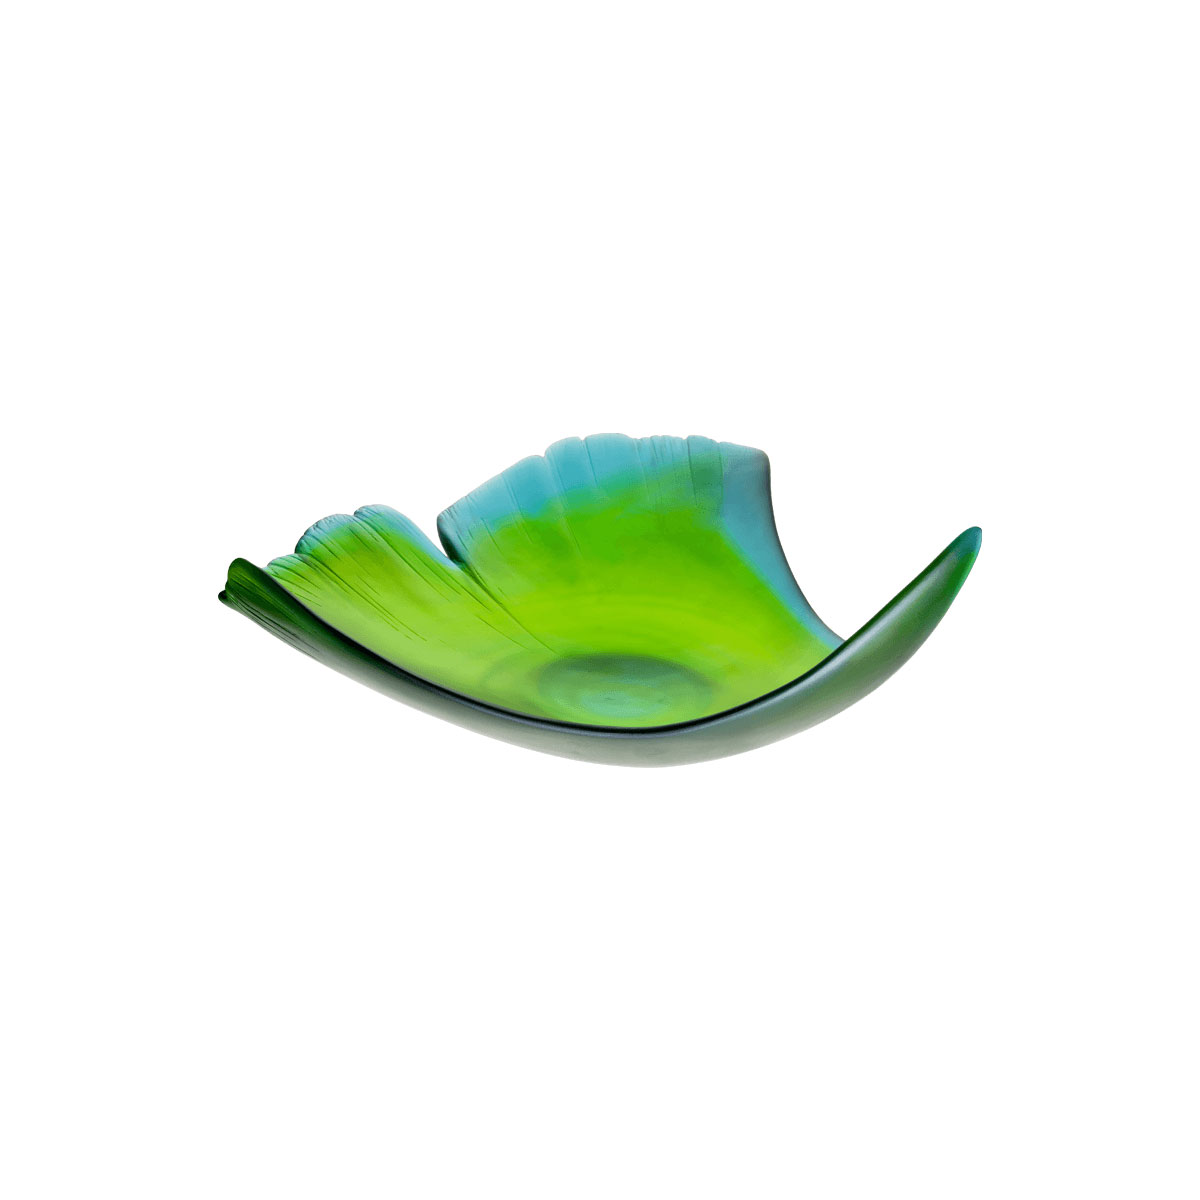 Daum 13.3" Ginkgo Leaf Bowl in Green